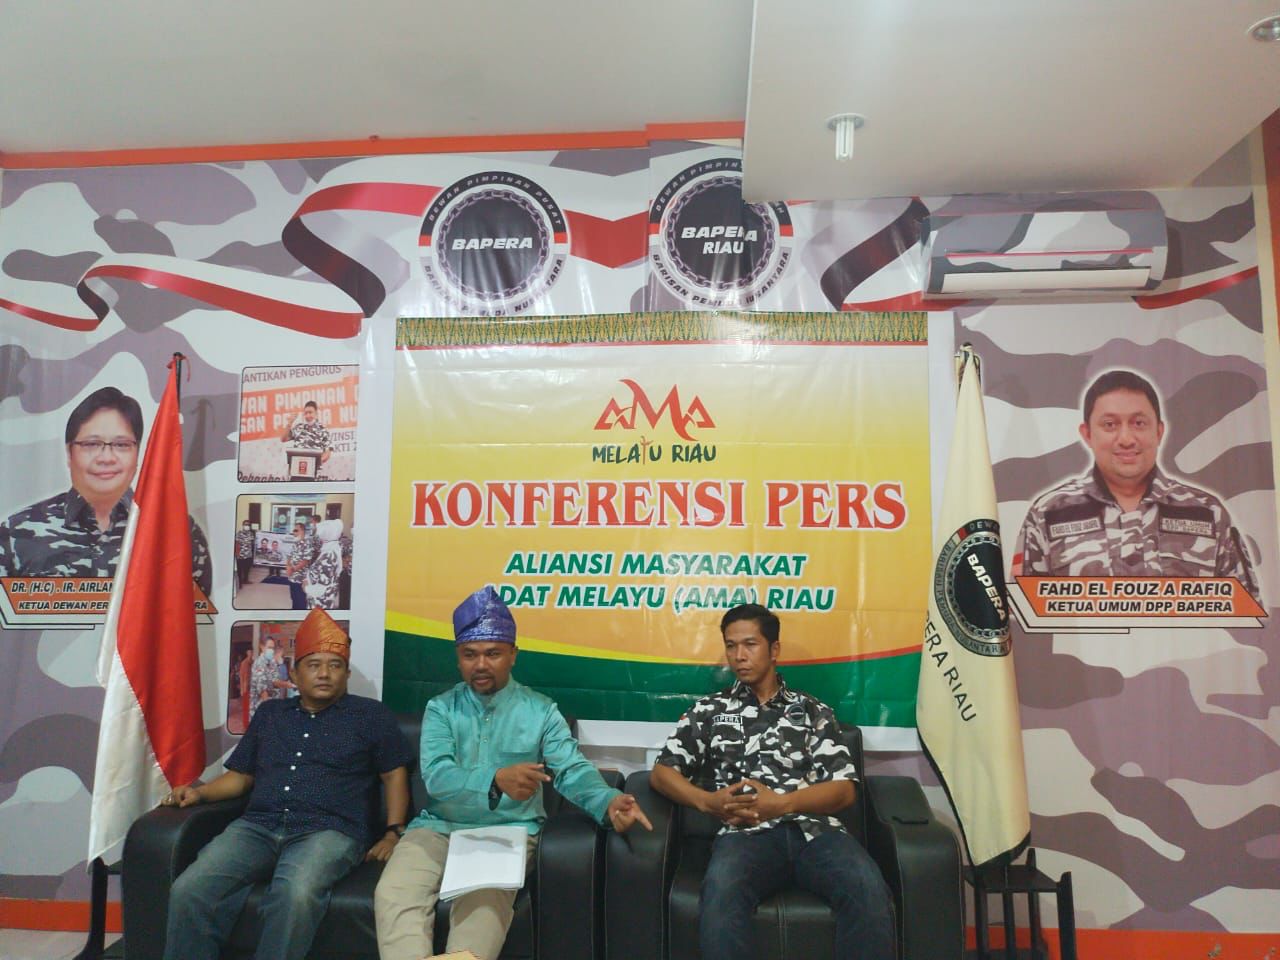 Sinergitas AMA dan Bapera Riau, Tidak Ada Kompromi dengan Mafia Korporasi